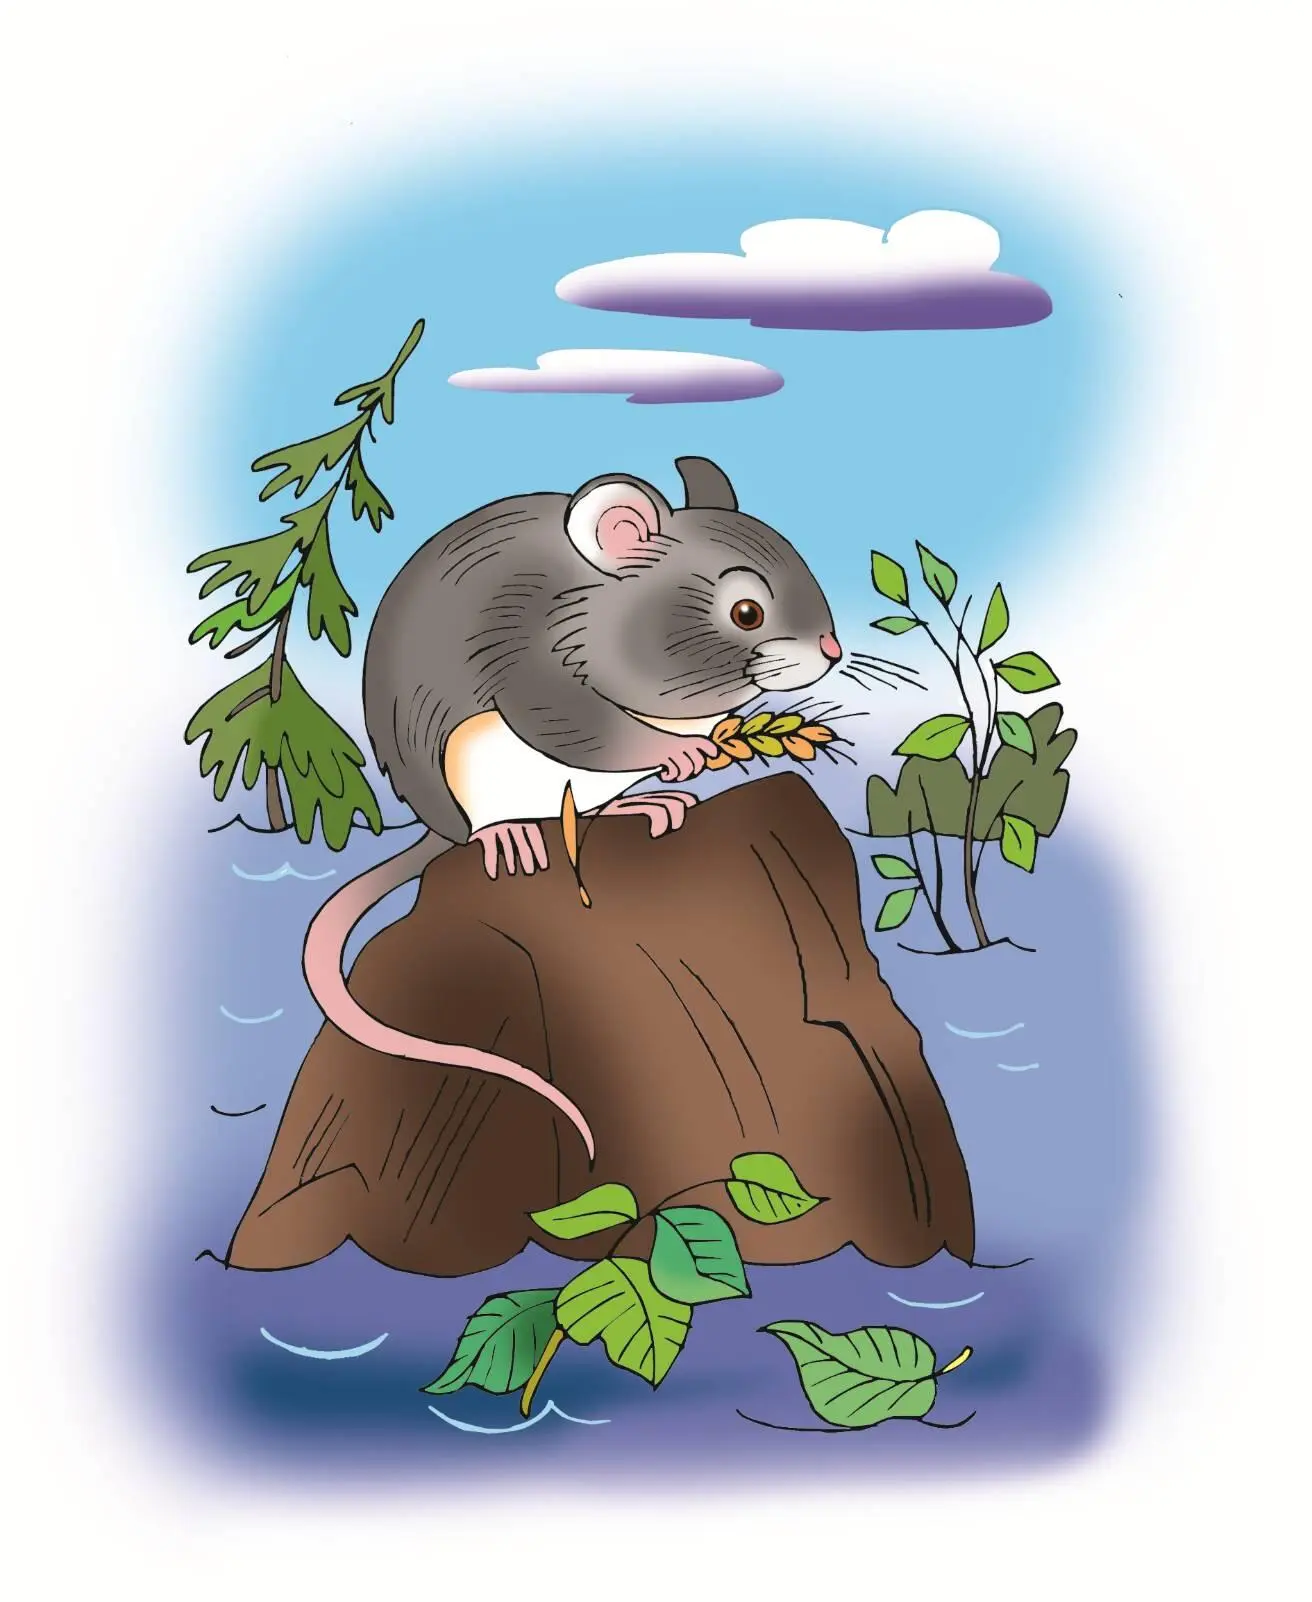 Мышонок Прибежал Мышонок на опушку леса Помогите спасти добро река выходит - фото 10